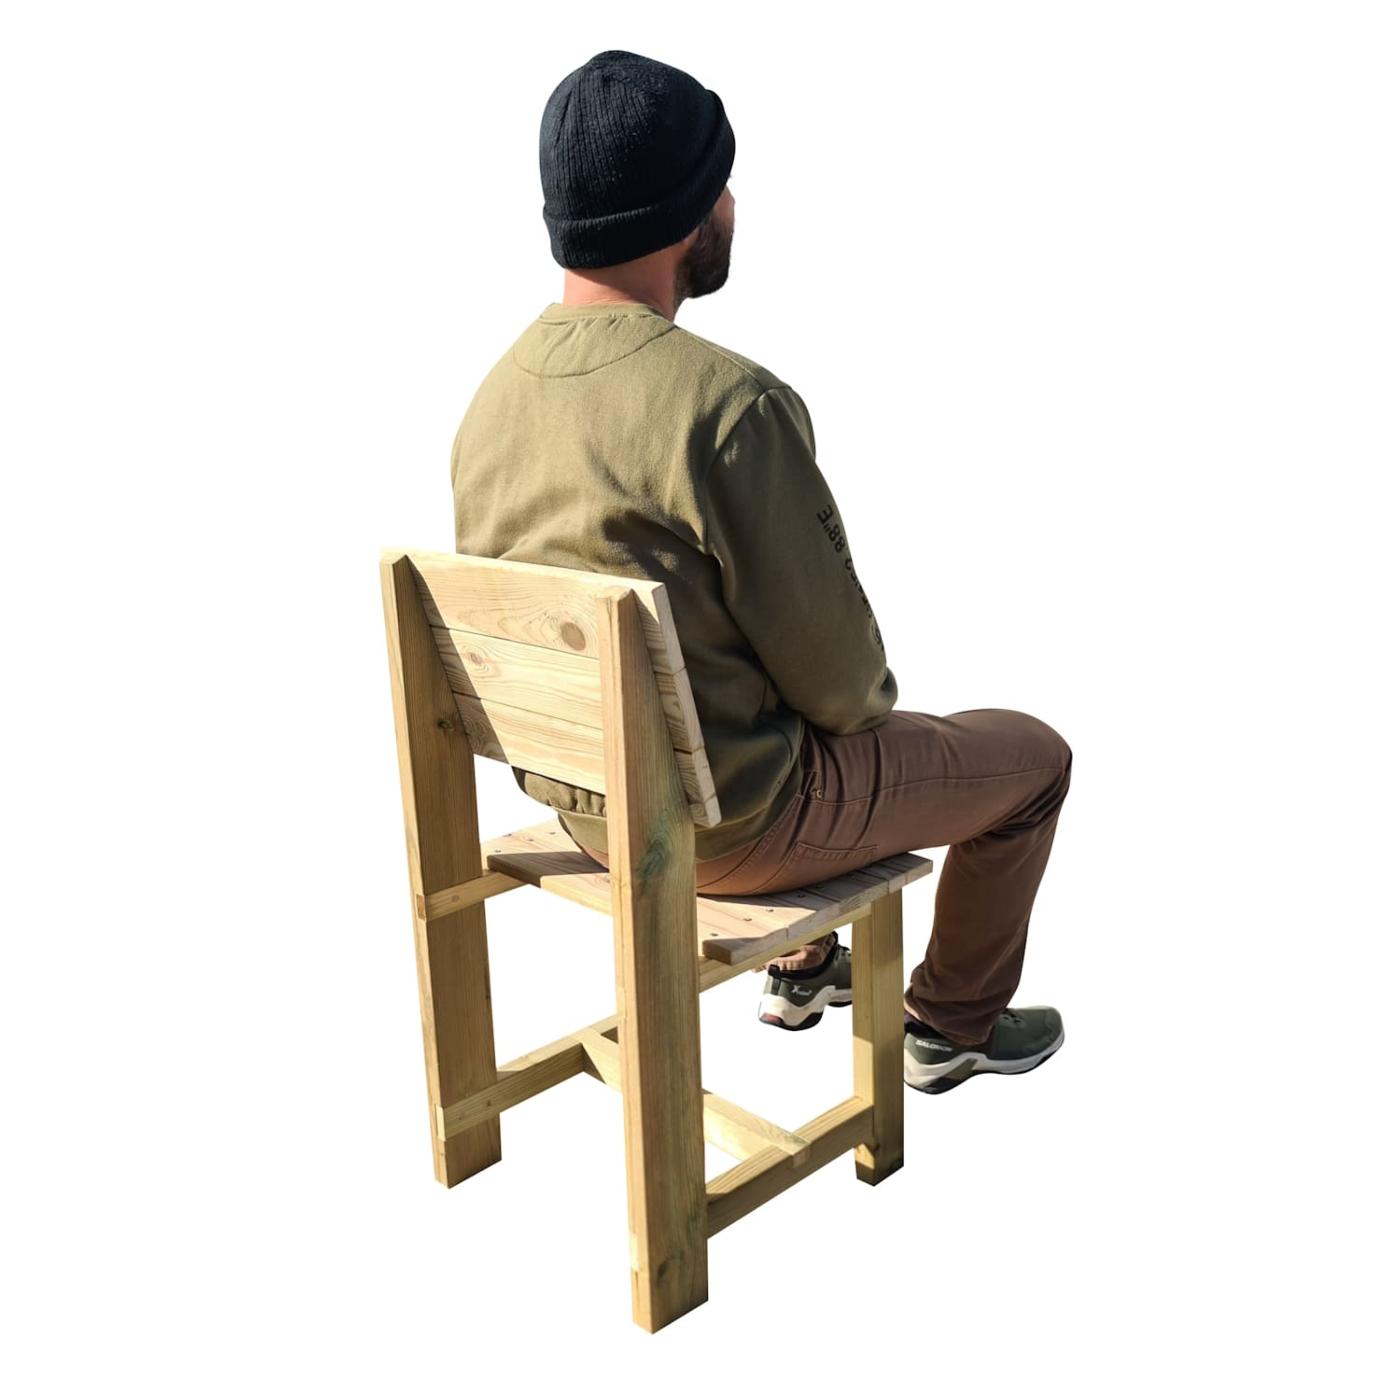 Conjunt de 4 cadires de fusta per a l'exterior MASGAMES BATEA